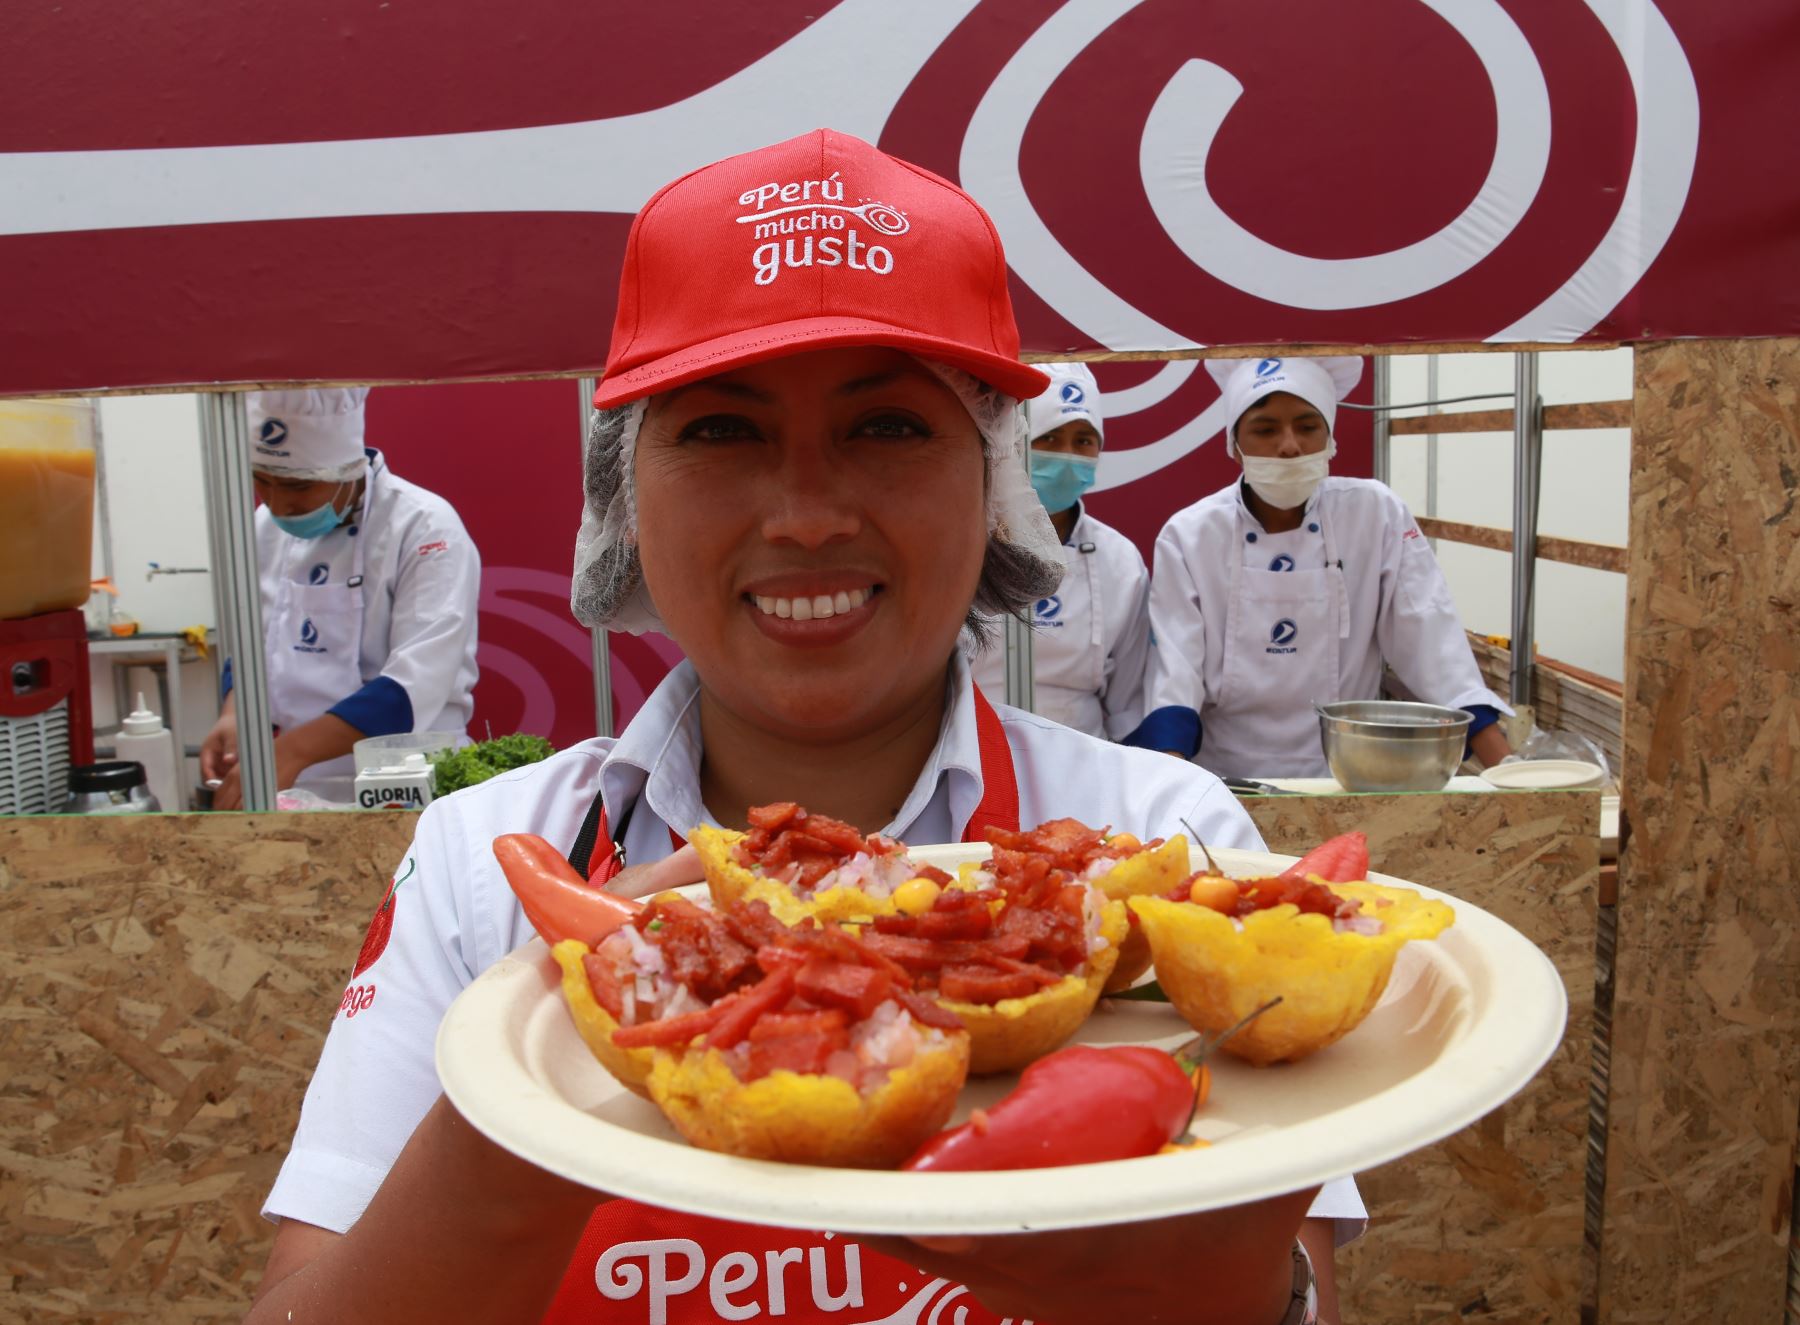 Arequipa, una de las regiones con mayor tradición culinaria, fue elegida para el relanzamiento de la feria gastronómica "Perú Mucho Gusto".